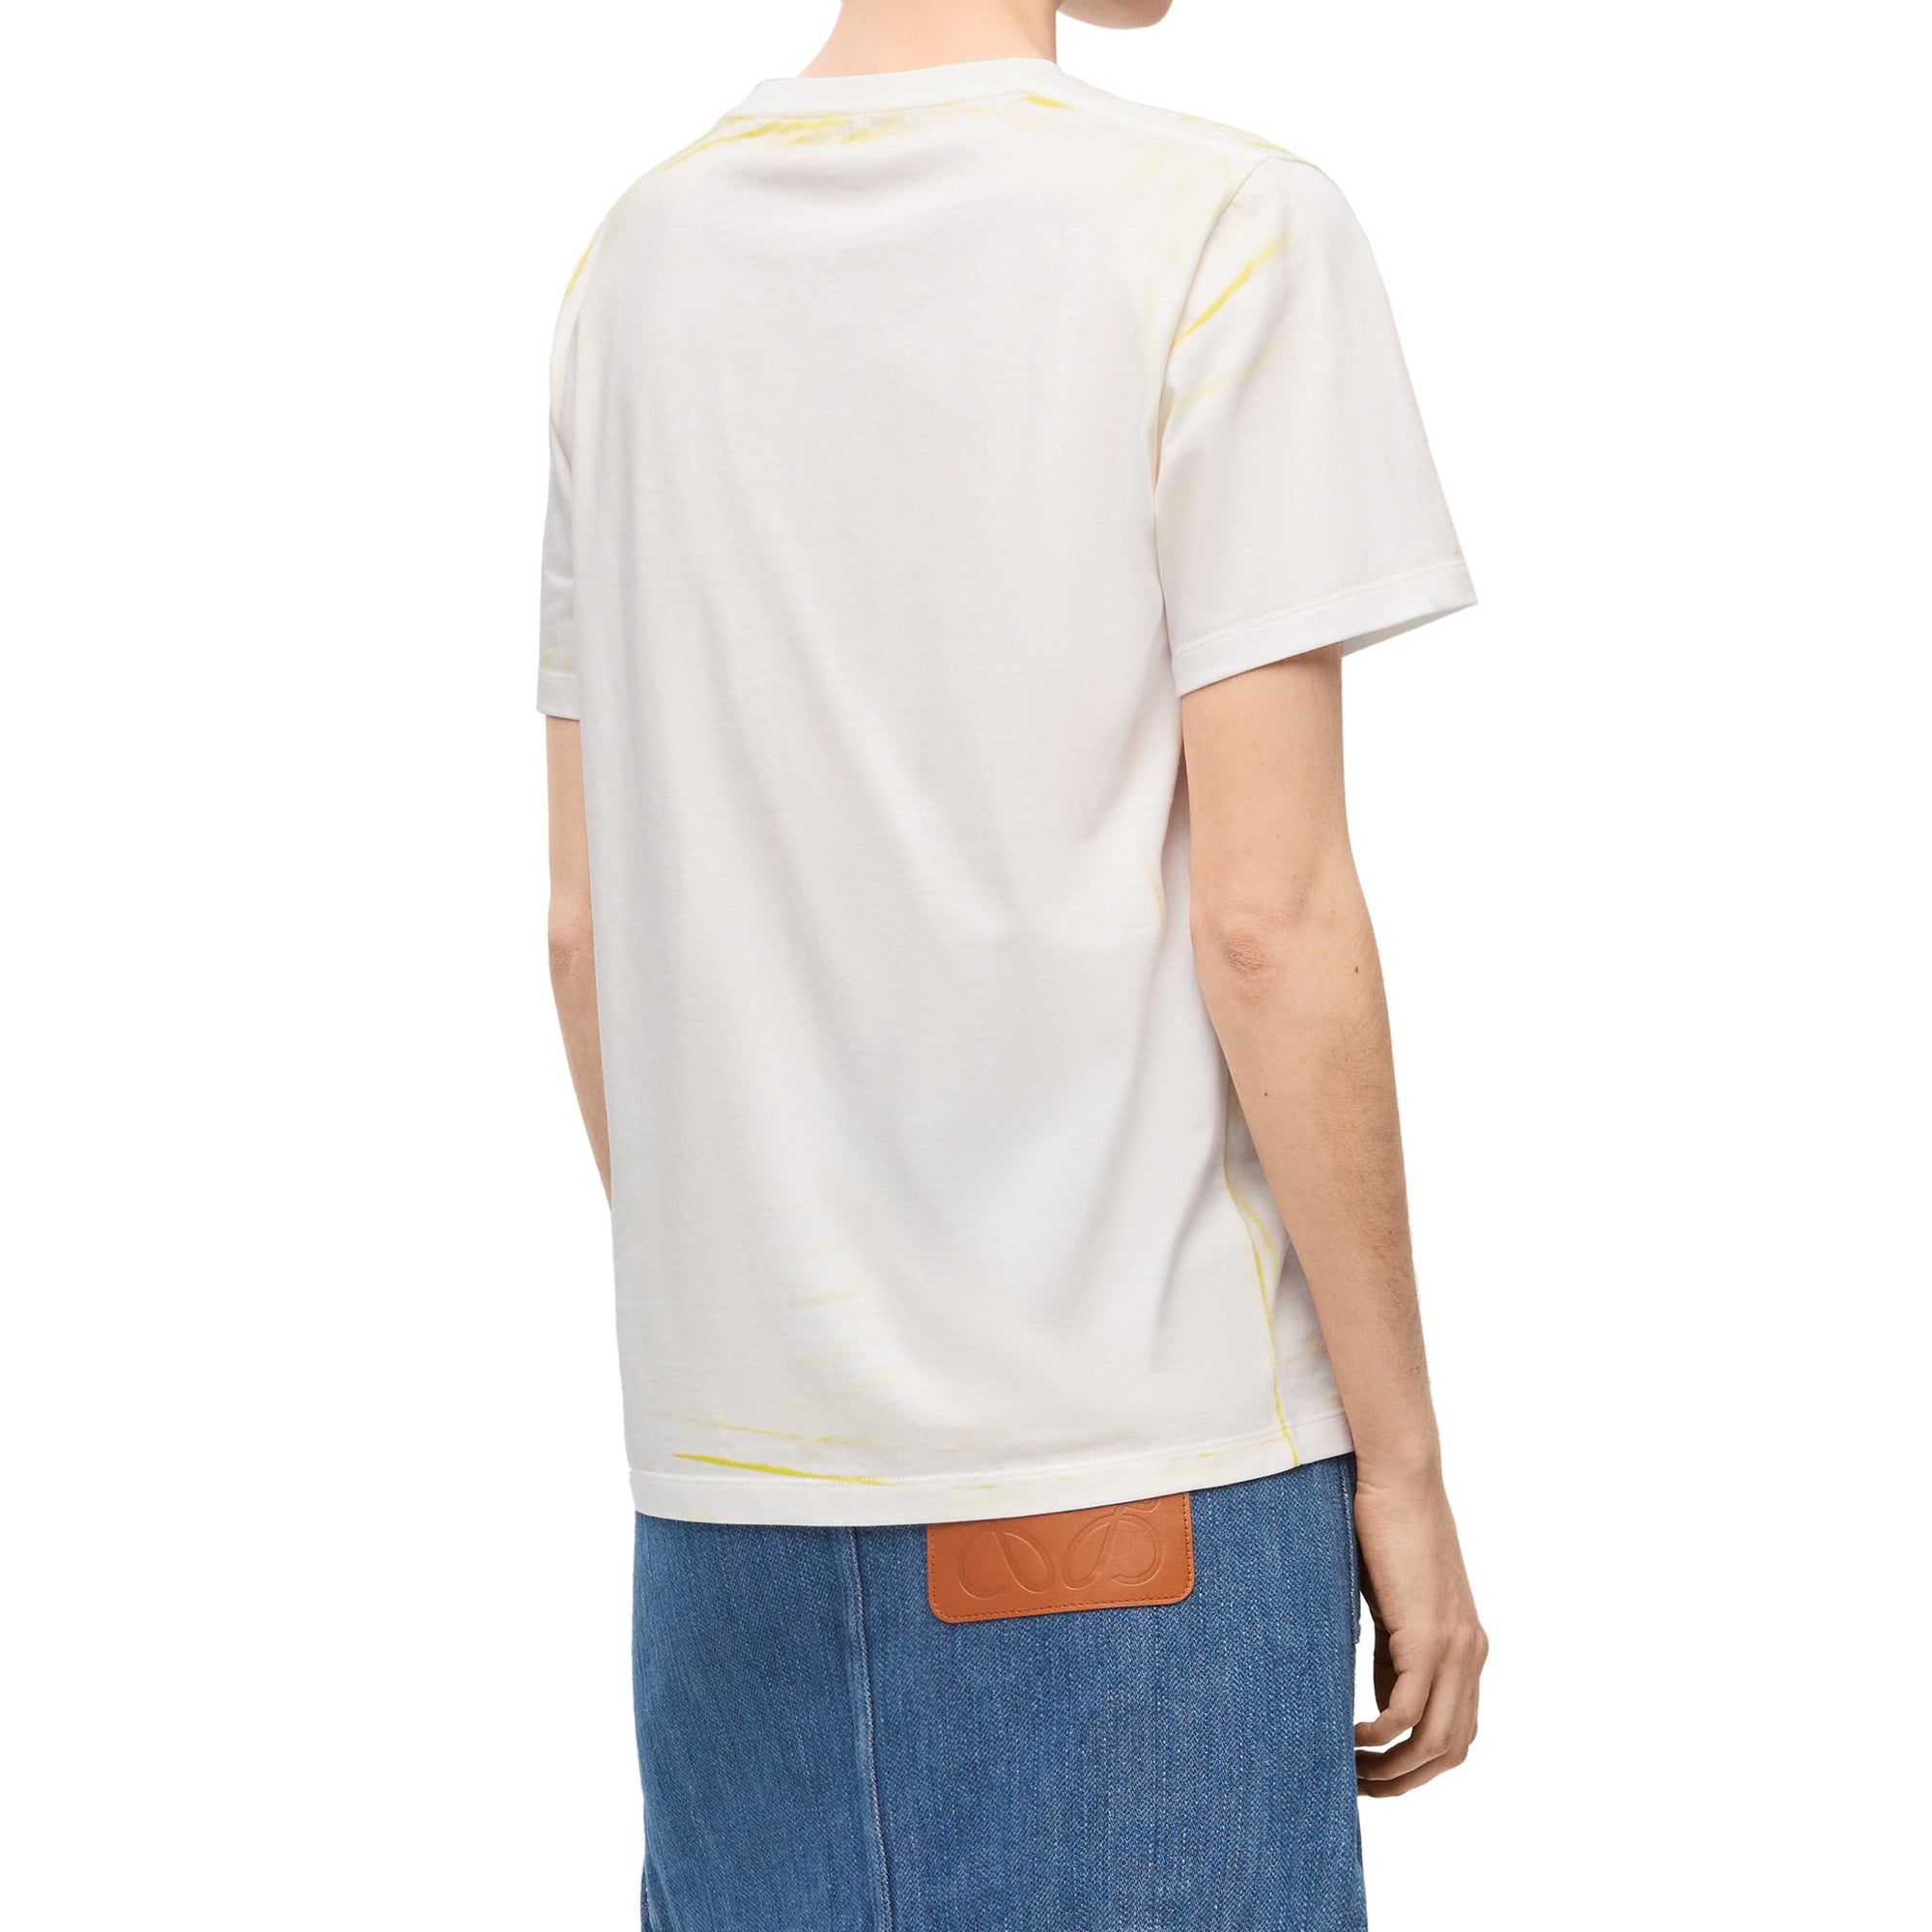 Loewe - Women’s Regular Fit T-Shirt - (White/Yellow) view 4